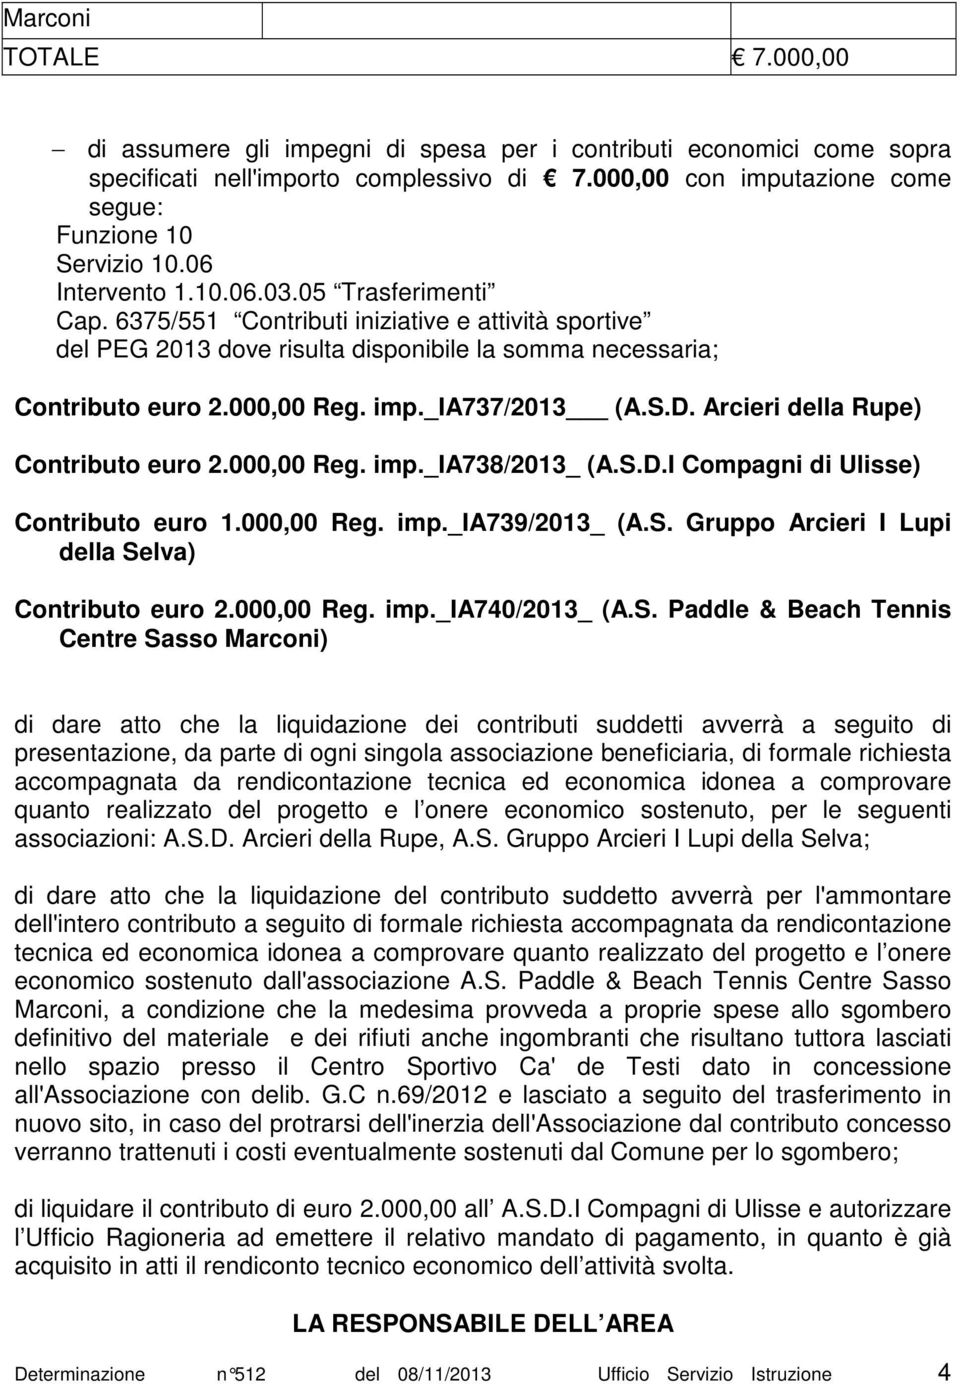 _ia737/2013 (A.S.D. Arcieri della Rupe) Contributo euro 2.000,00 Reg. imp._ia738/2013_ (A.S.D.I Compagni di Ulisse) Contributo euro 1.000,00 Reg. imp._ia739/2013_ (A.S. Gruppo Arcieri I Lupi della Selva) Contributo euro 2.